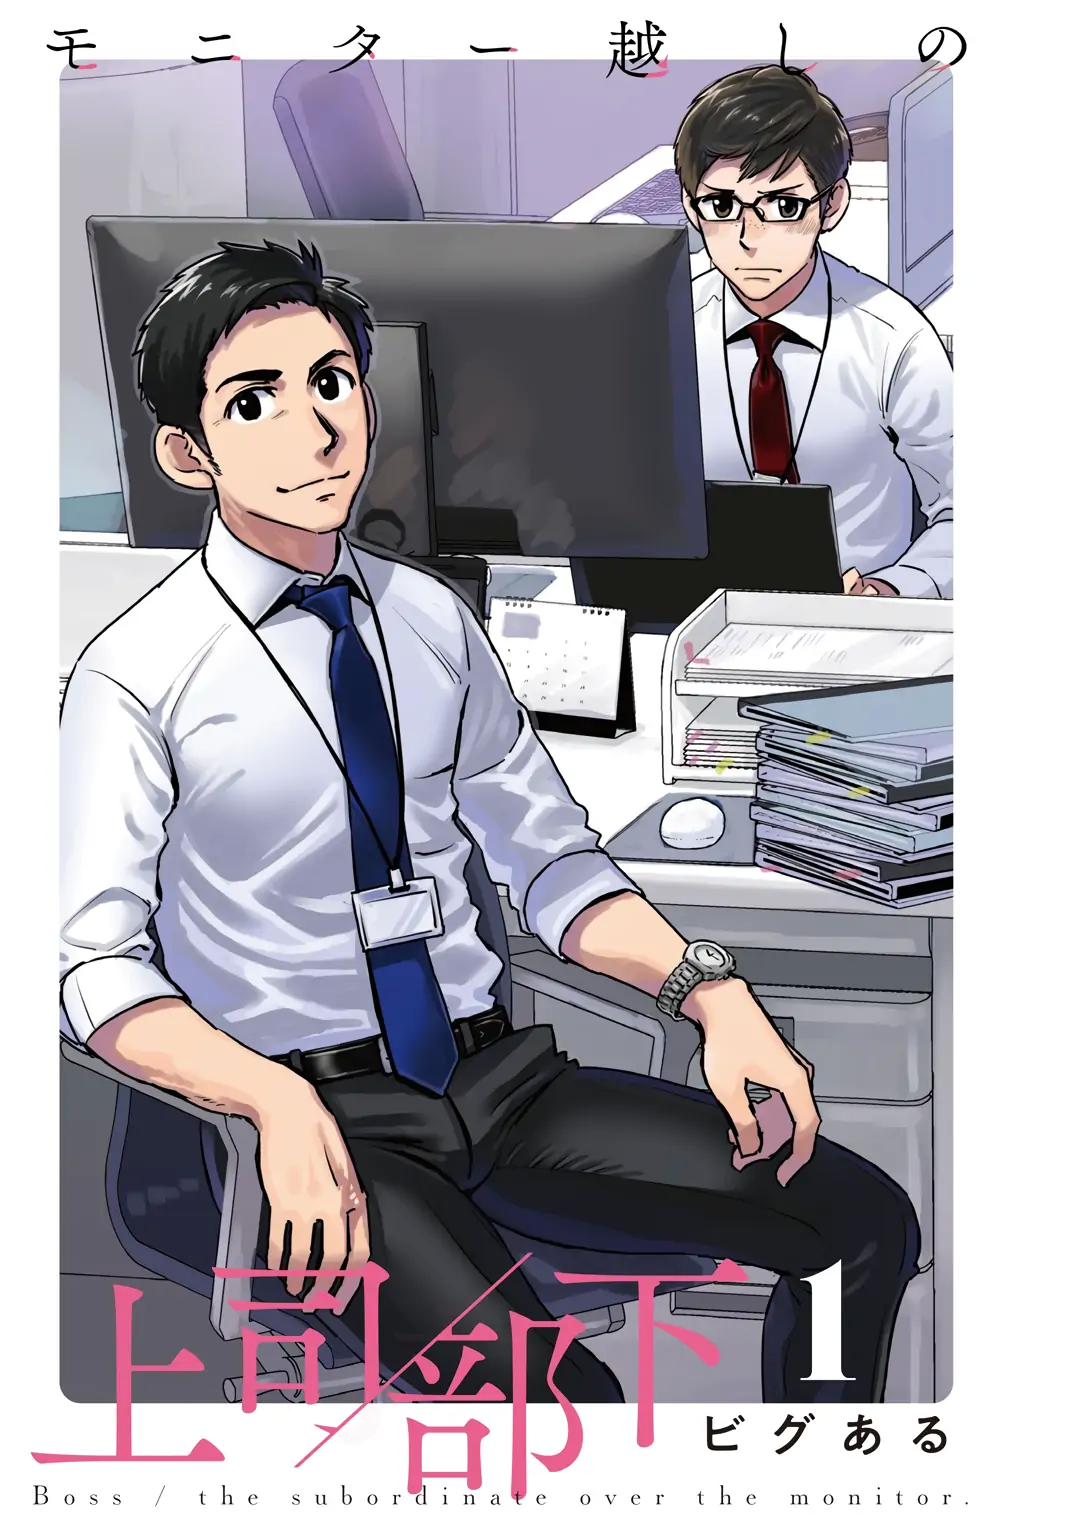 Рисунок босс за монитором. Яой Манга с боссом и подчиненным в офисе. Комикс начальник и подчиненный.